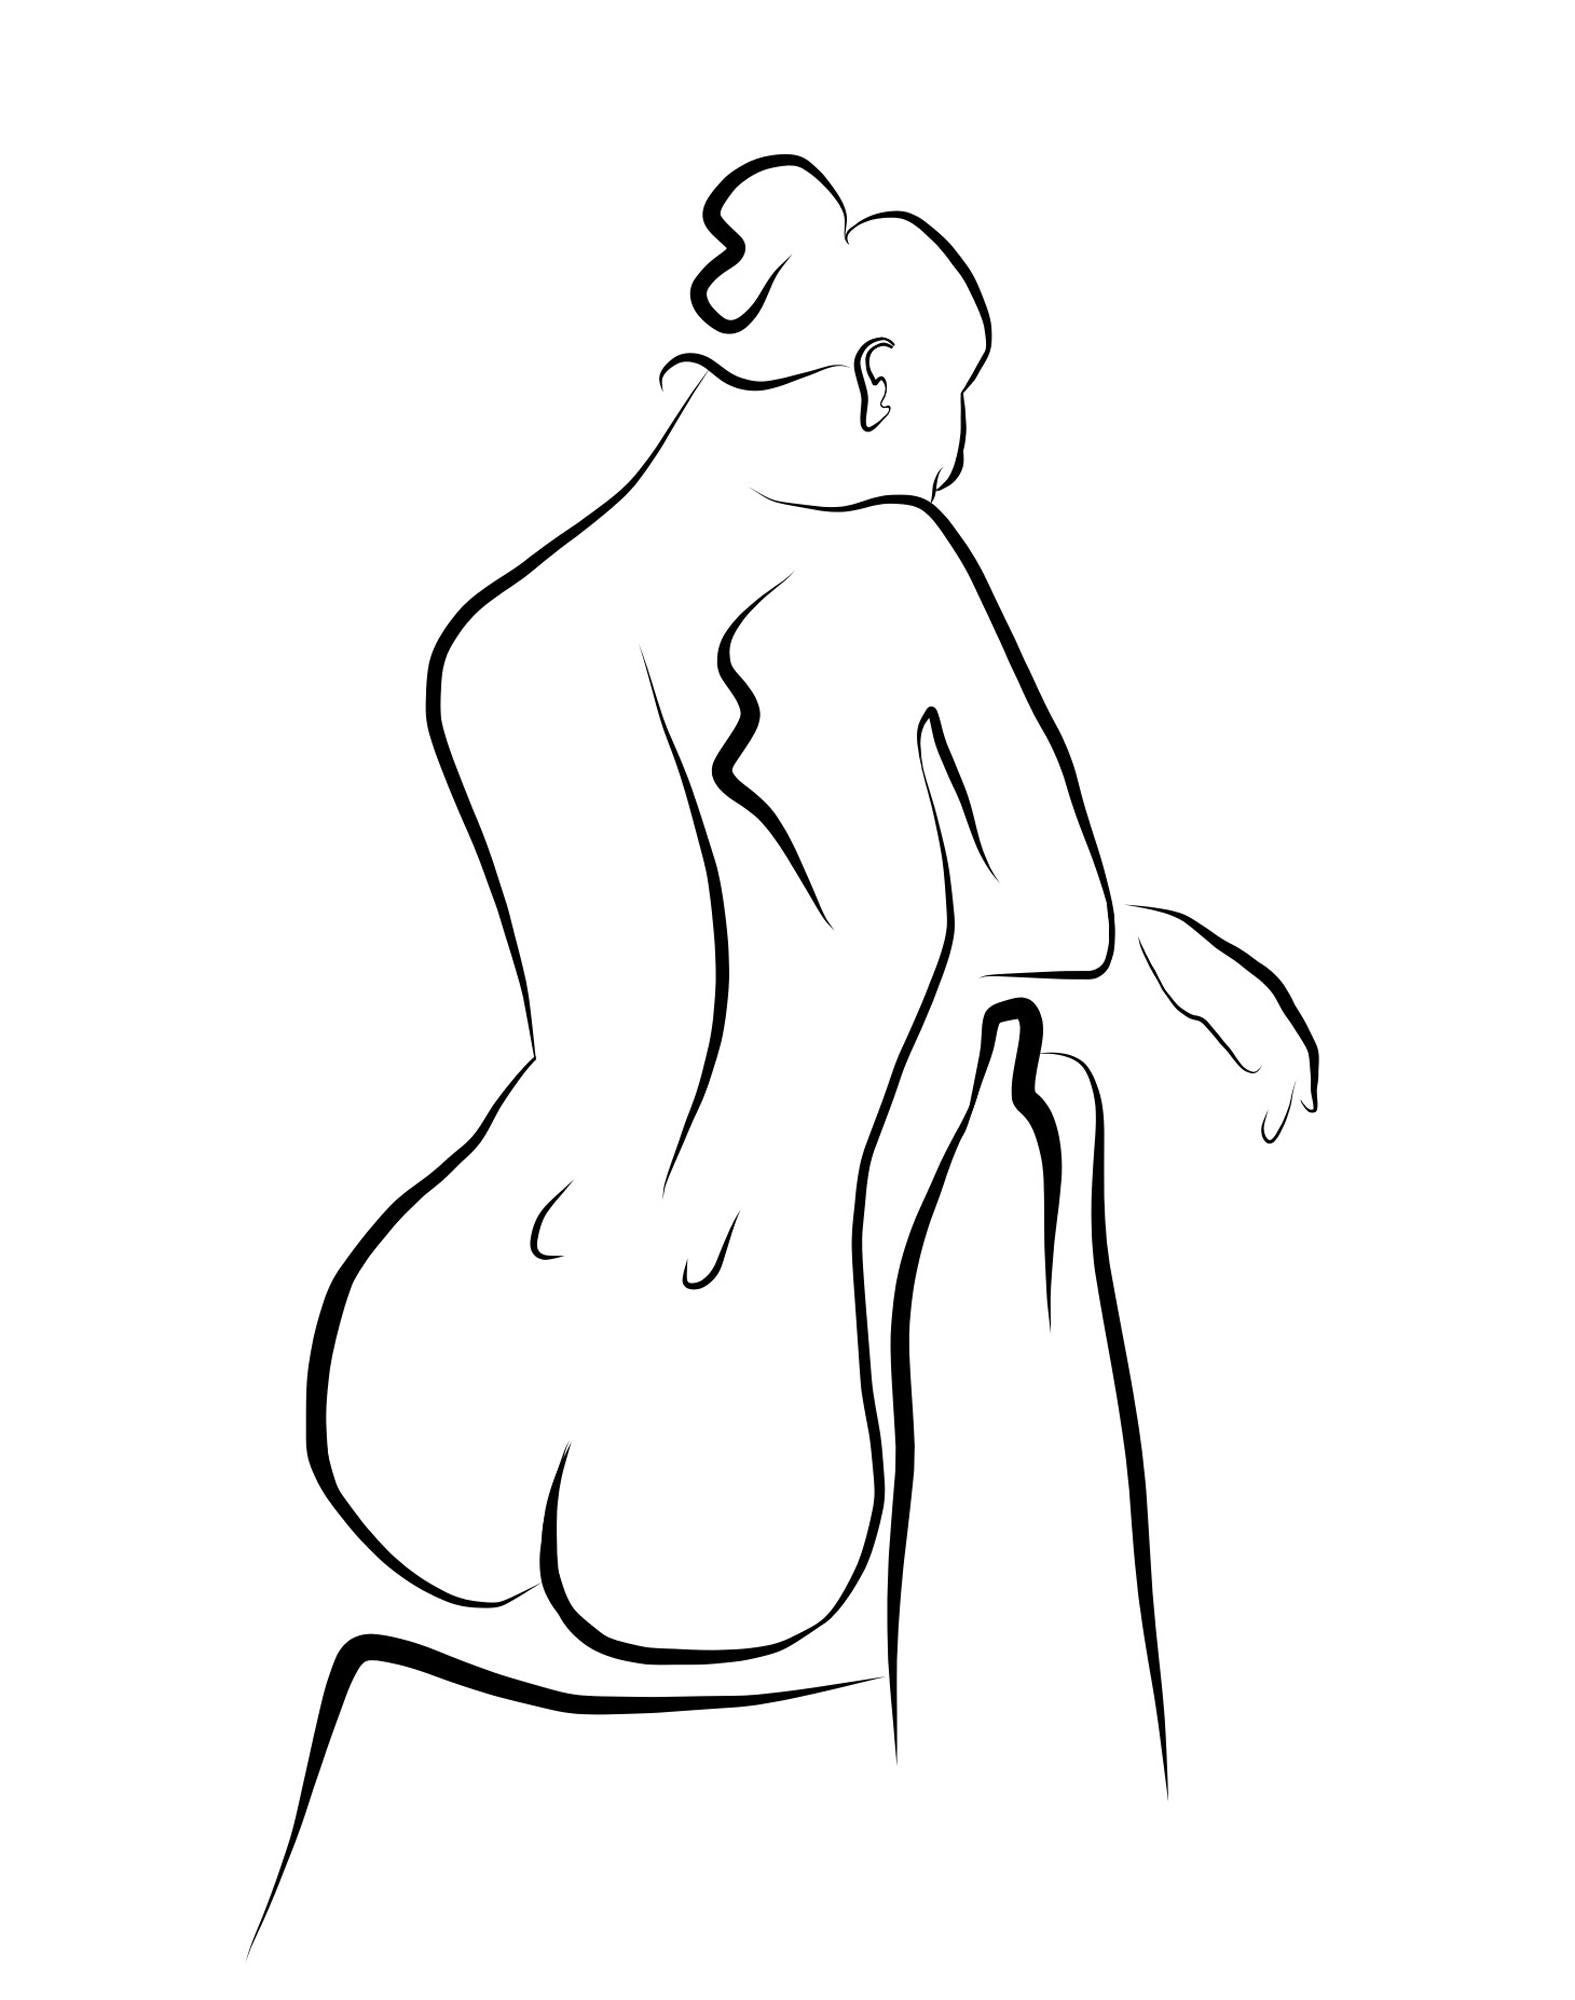 Michael Binkley Nude Print - Haiku #57 - Digital Vector Drawing Seated Female Nude From Rear